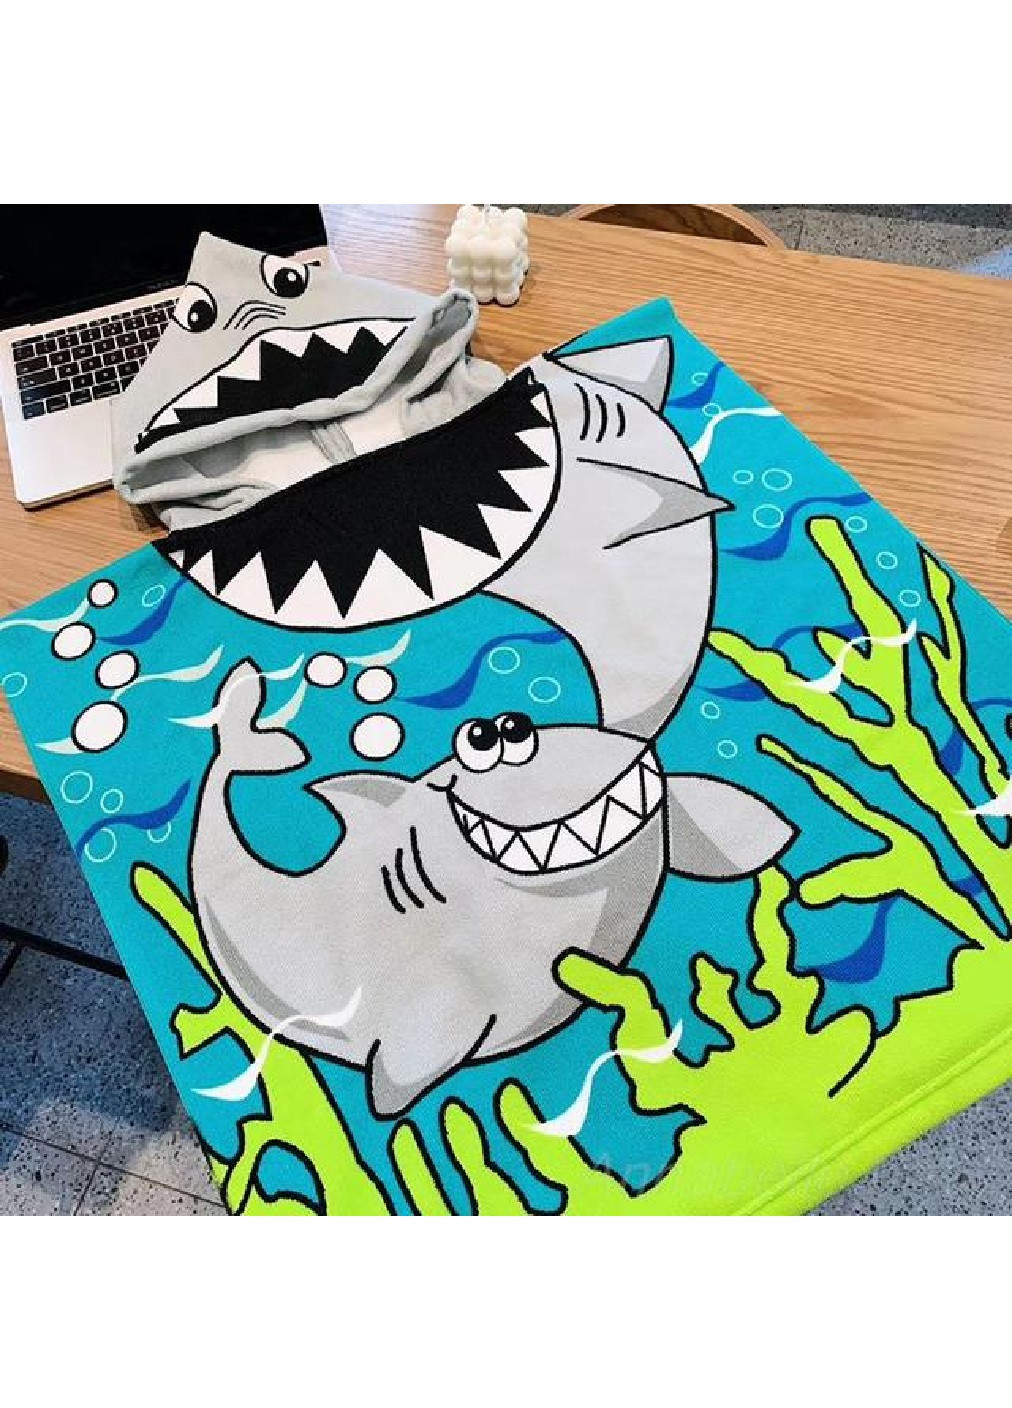 Unbranded детское пляжное полотенце пончо с капюшоном микрофибра для ванной бассейна пляжа 60х60 см (474686-prob) акула рисунок серый производство -